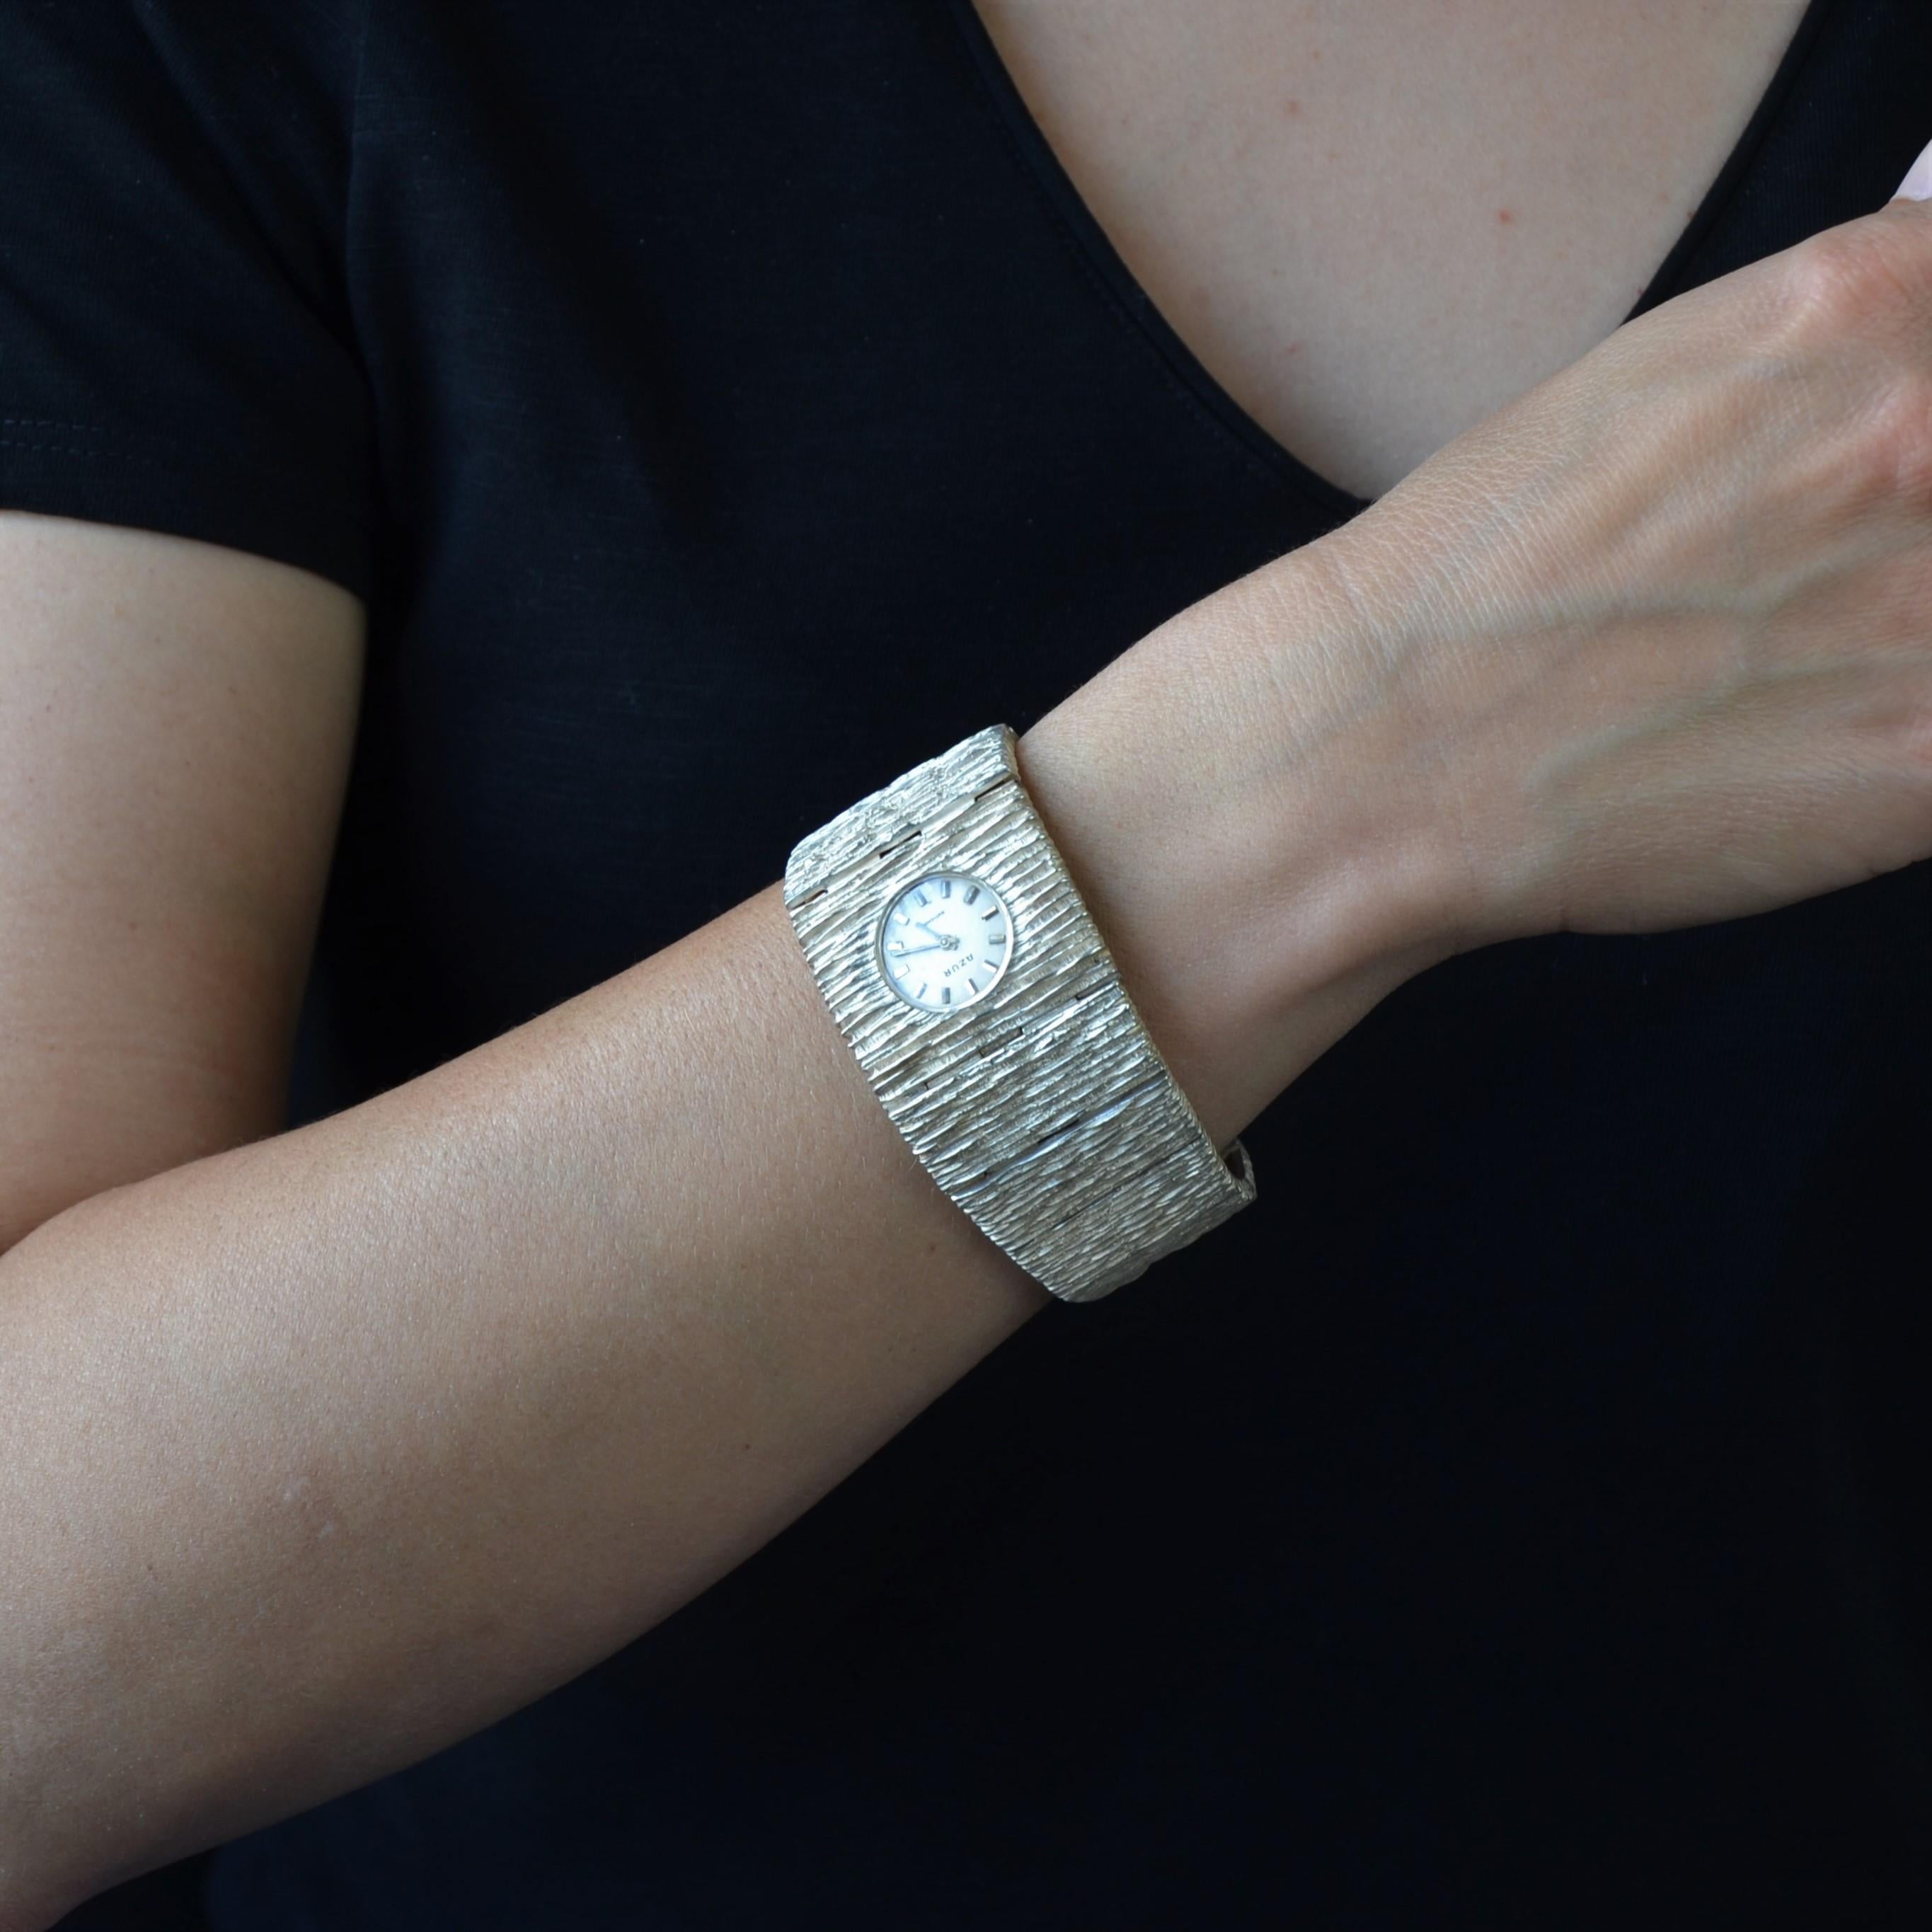 Uhr aus Silber, Schwanenpunze.
Wichtige und imposante Retro-Uhr in Silber, ist es von einem breiten Armband im Herbst gebildet, mit strukturiertem und amatized Silber. Die Schließe ist eine Skala.
Die Uhr hat eine runde Form, der hellgraue,